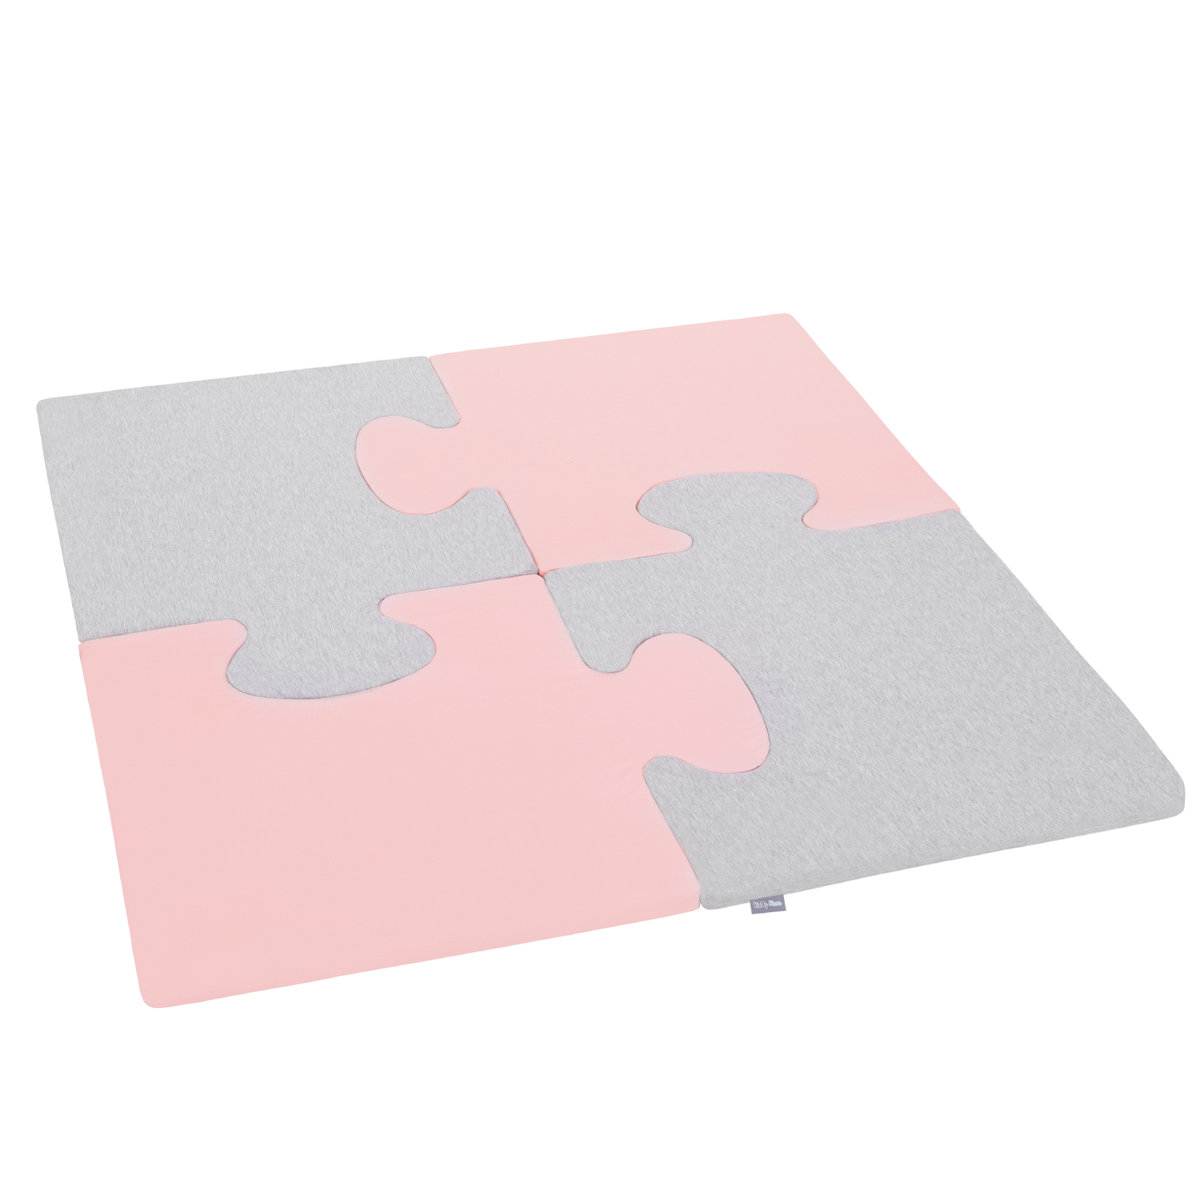 KiddyMoon Piankowe Puzzle do zabawy Kwadrat różowy-jasnoszary 4 Zabawka mata